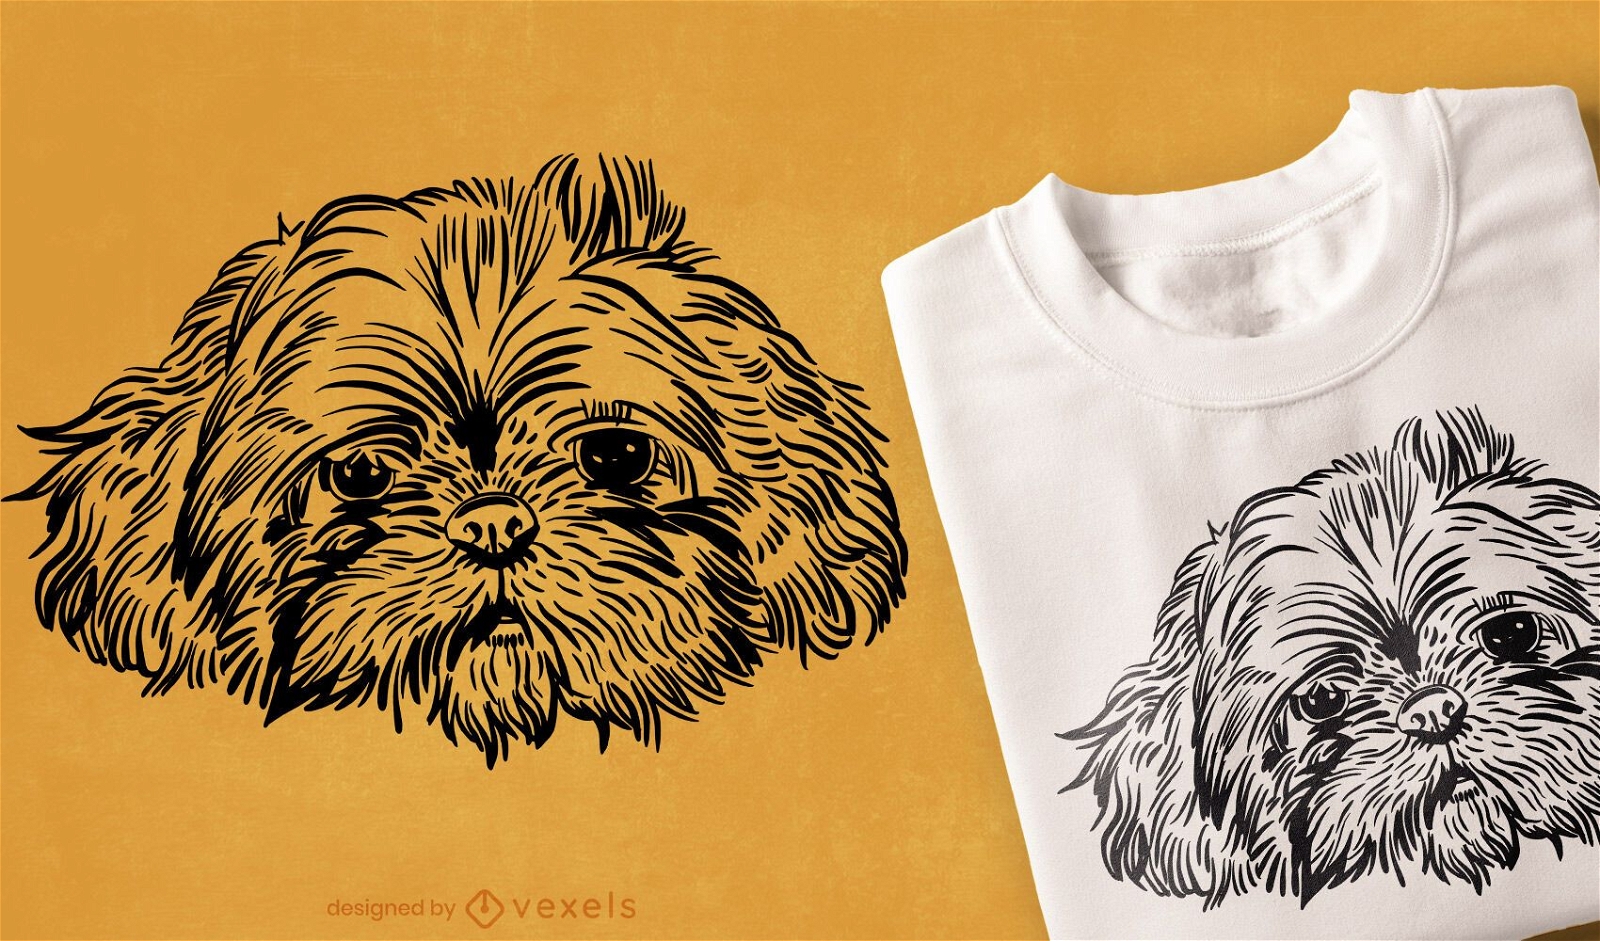 Desenho de camiseta com cara de cachorro desenhada ? m?o